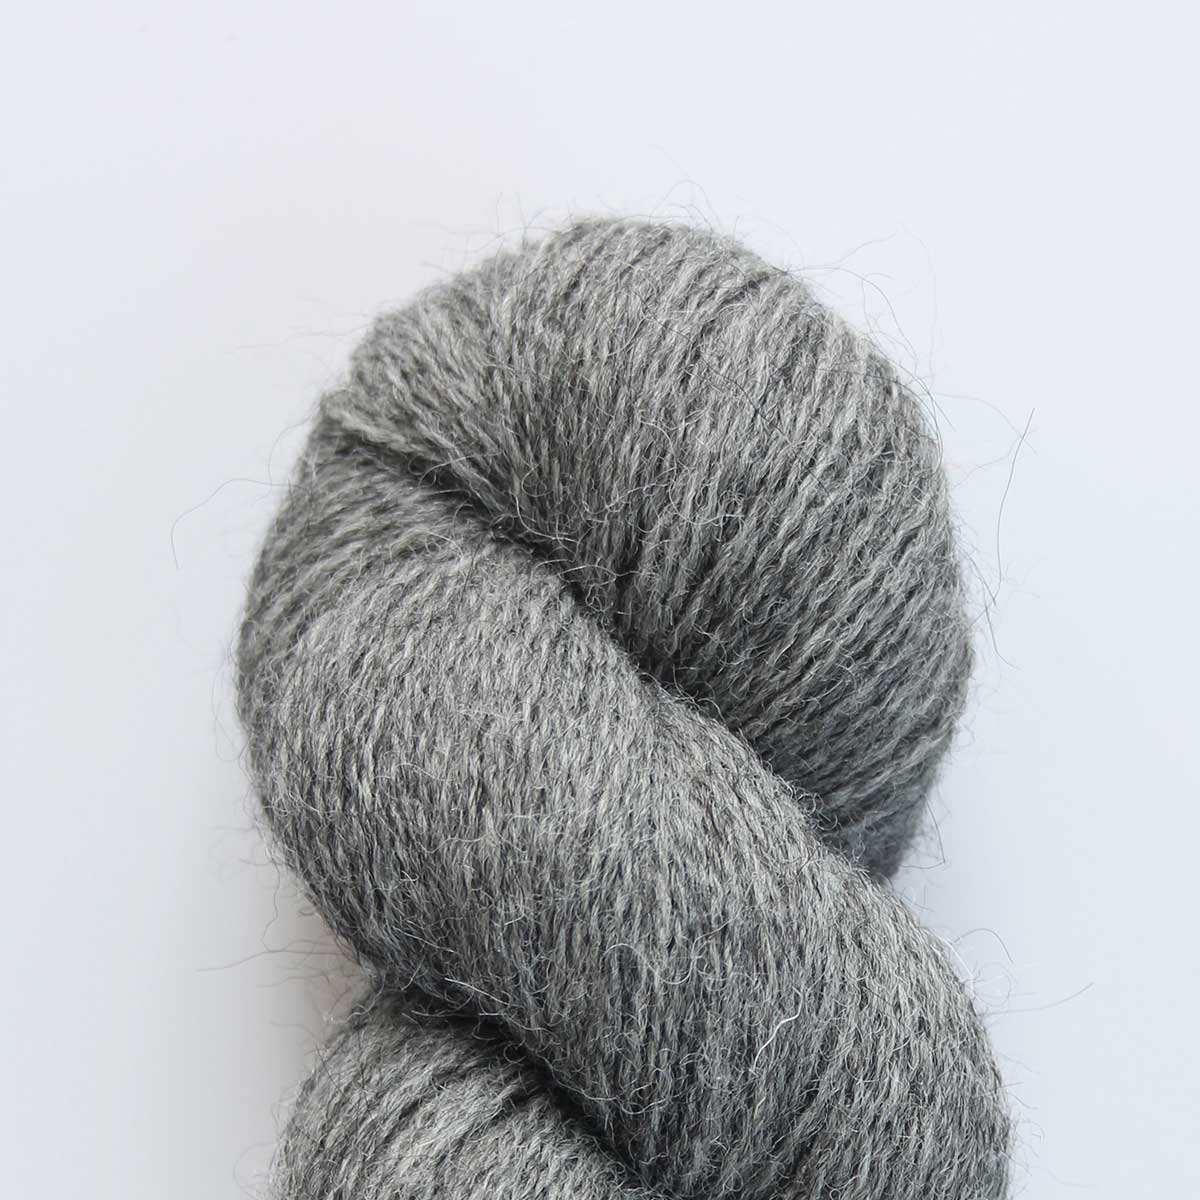 Eden 4Ply Pack Of 5: 70% Organic British Hand Knitting Wool, 30% Alpaca 100g Hank